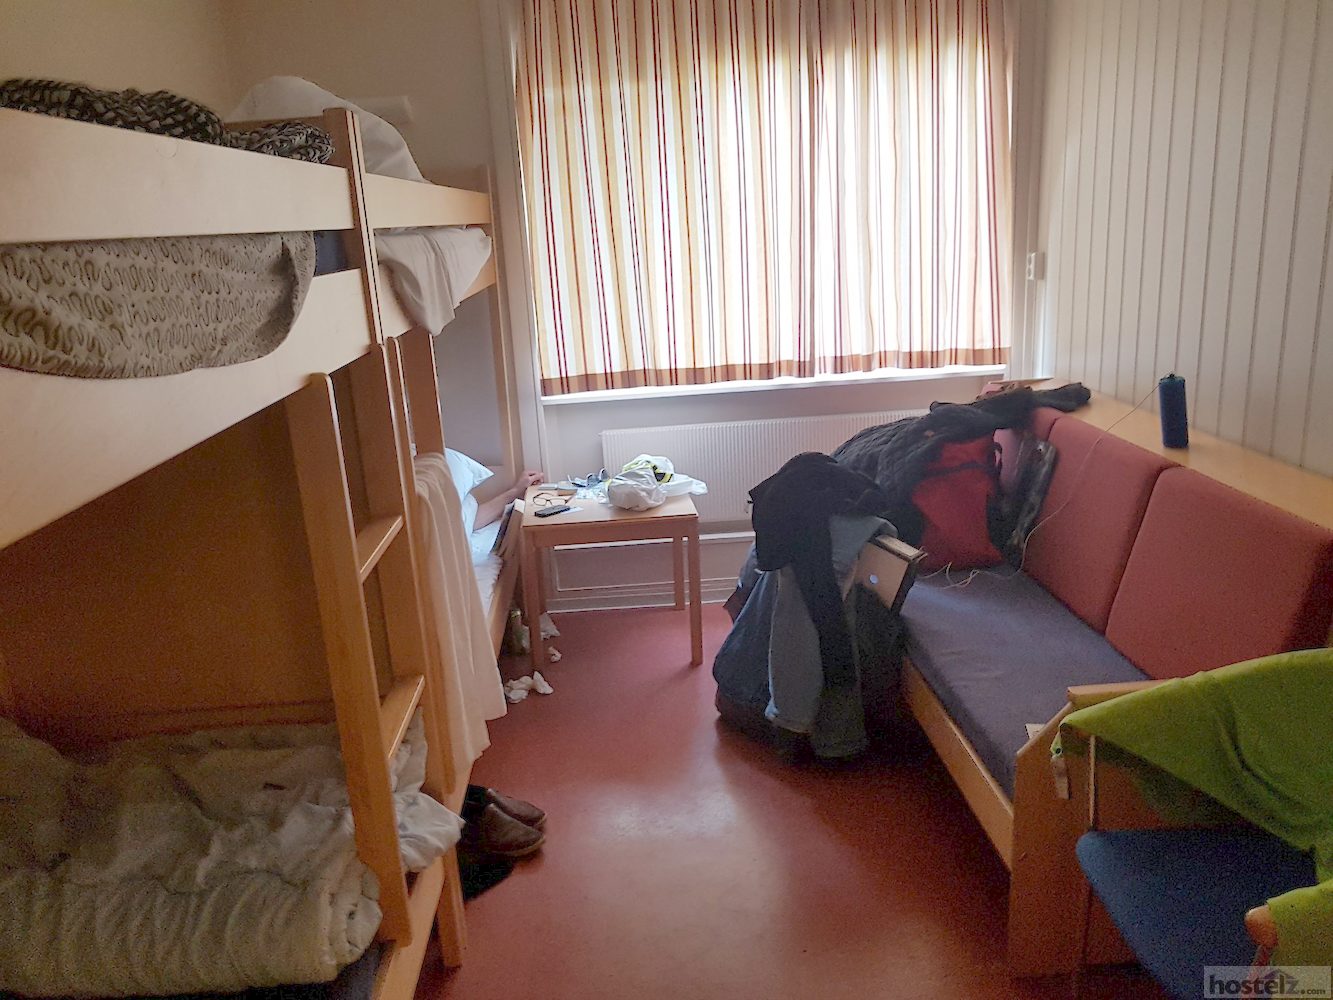 4 bed dorm room 